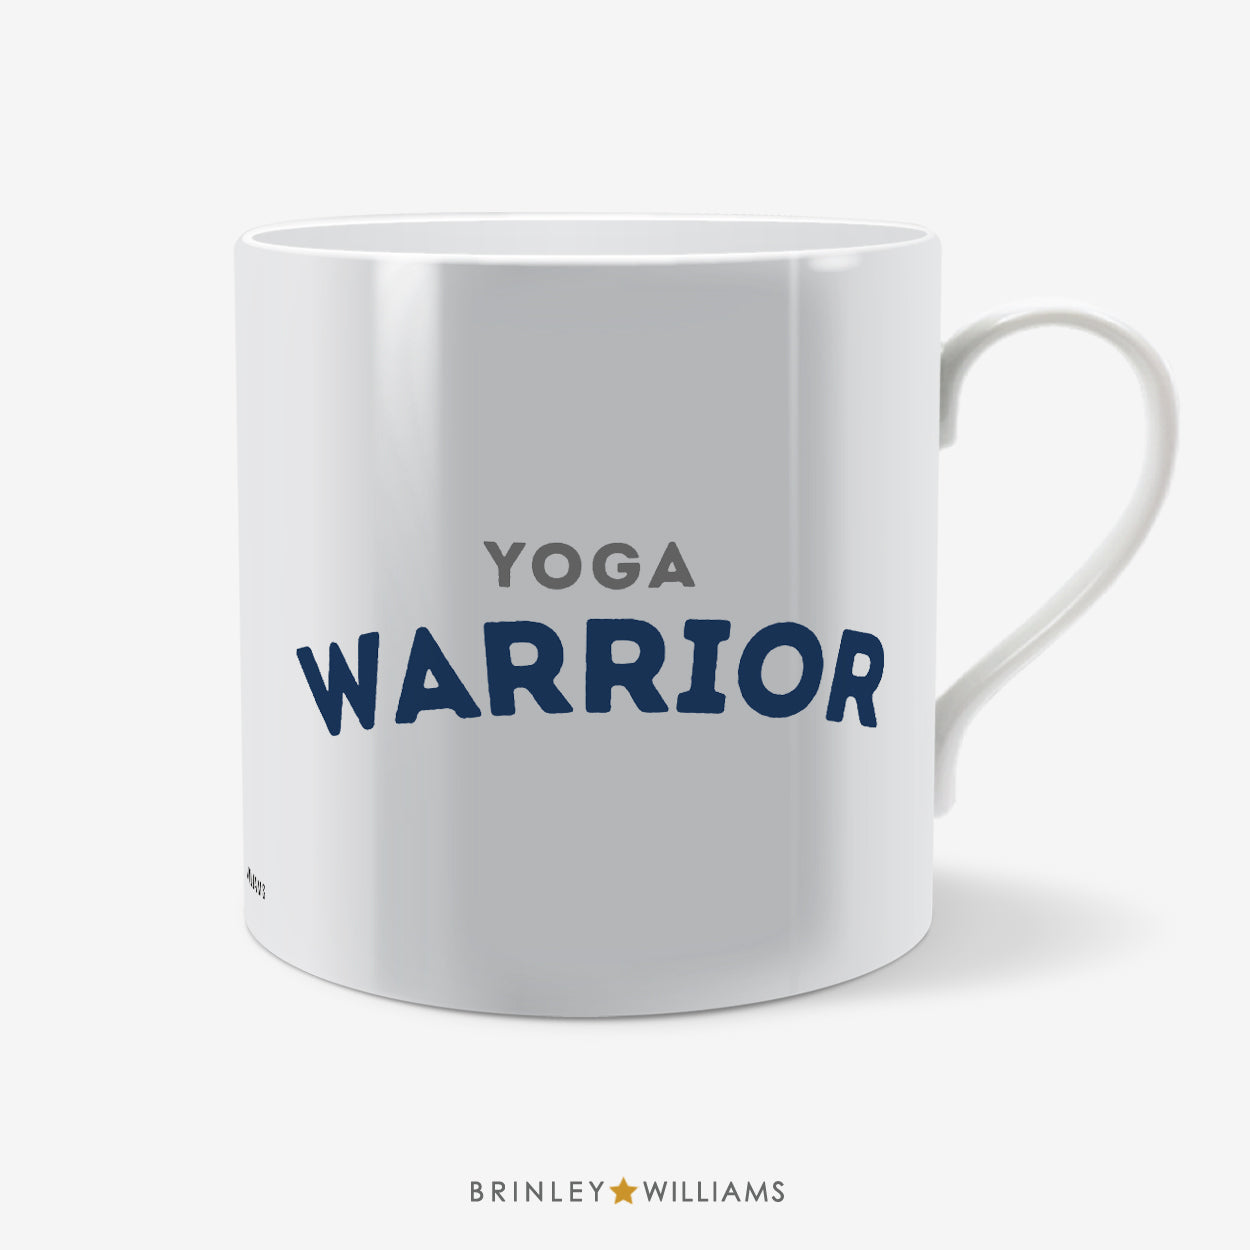 Yoga Warrior Mug - Navy